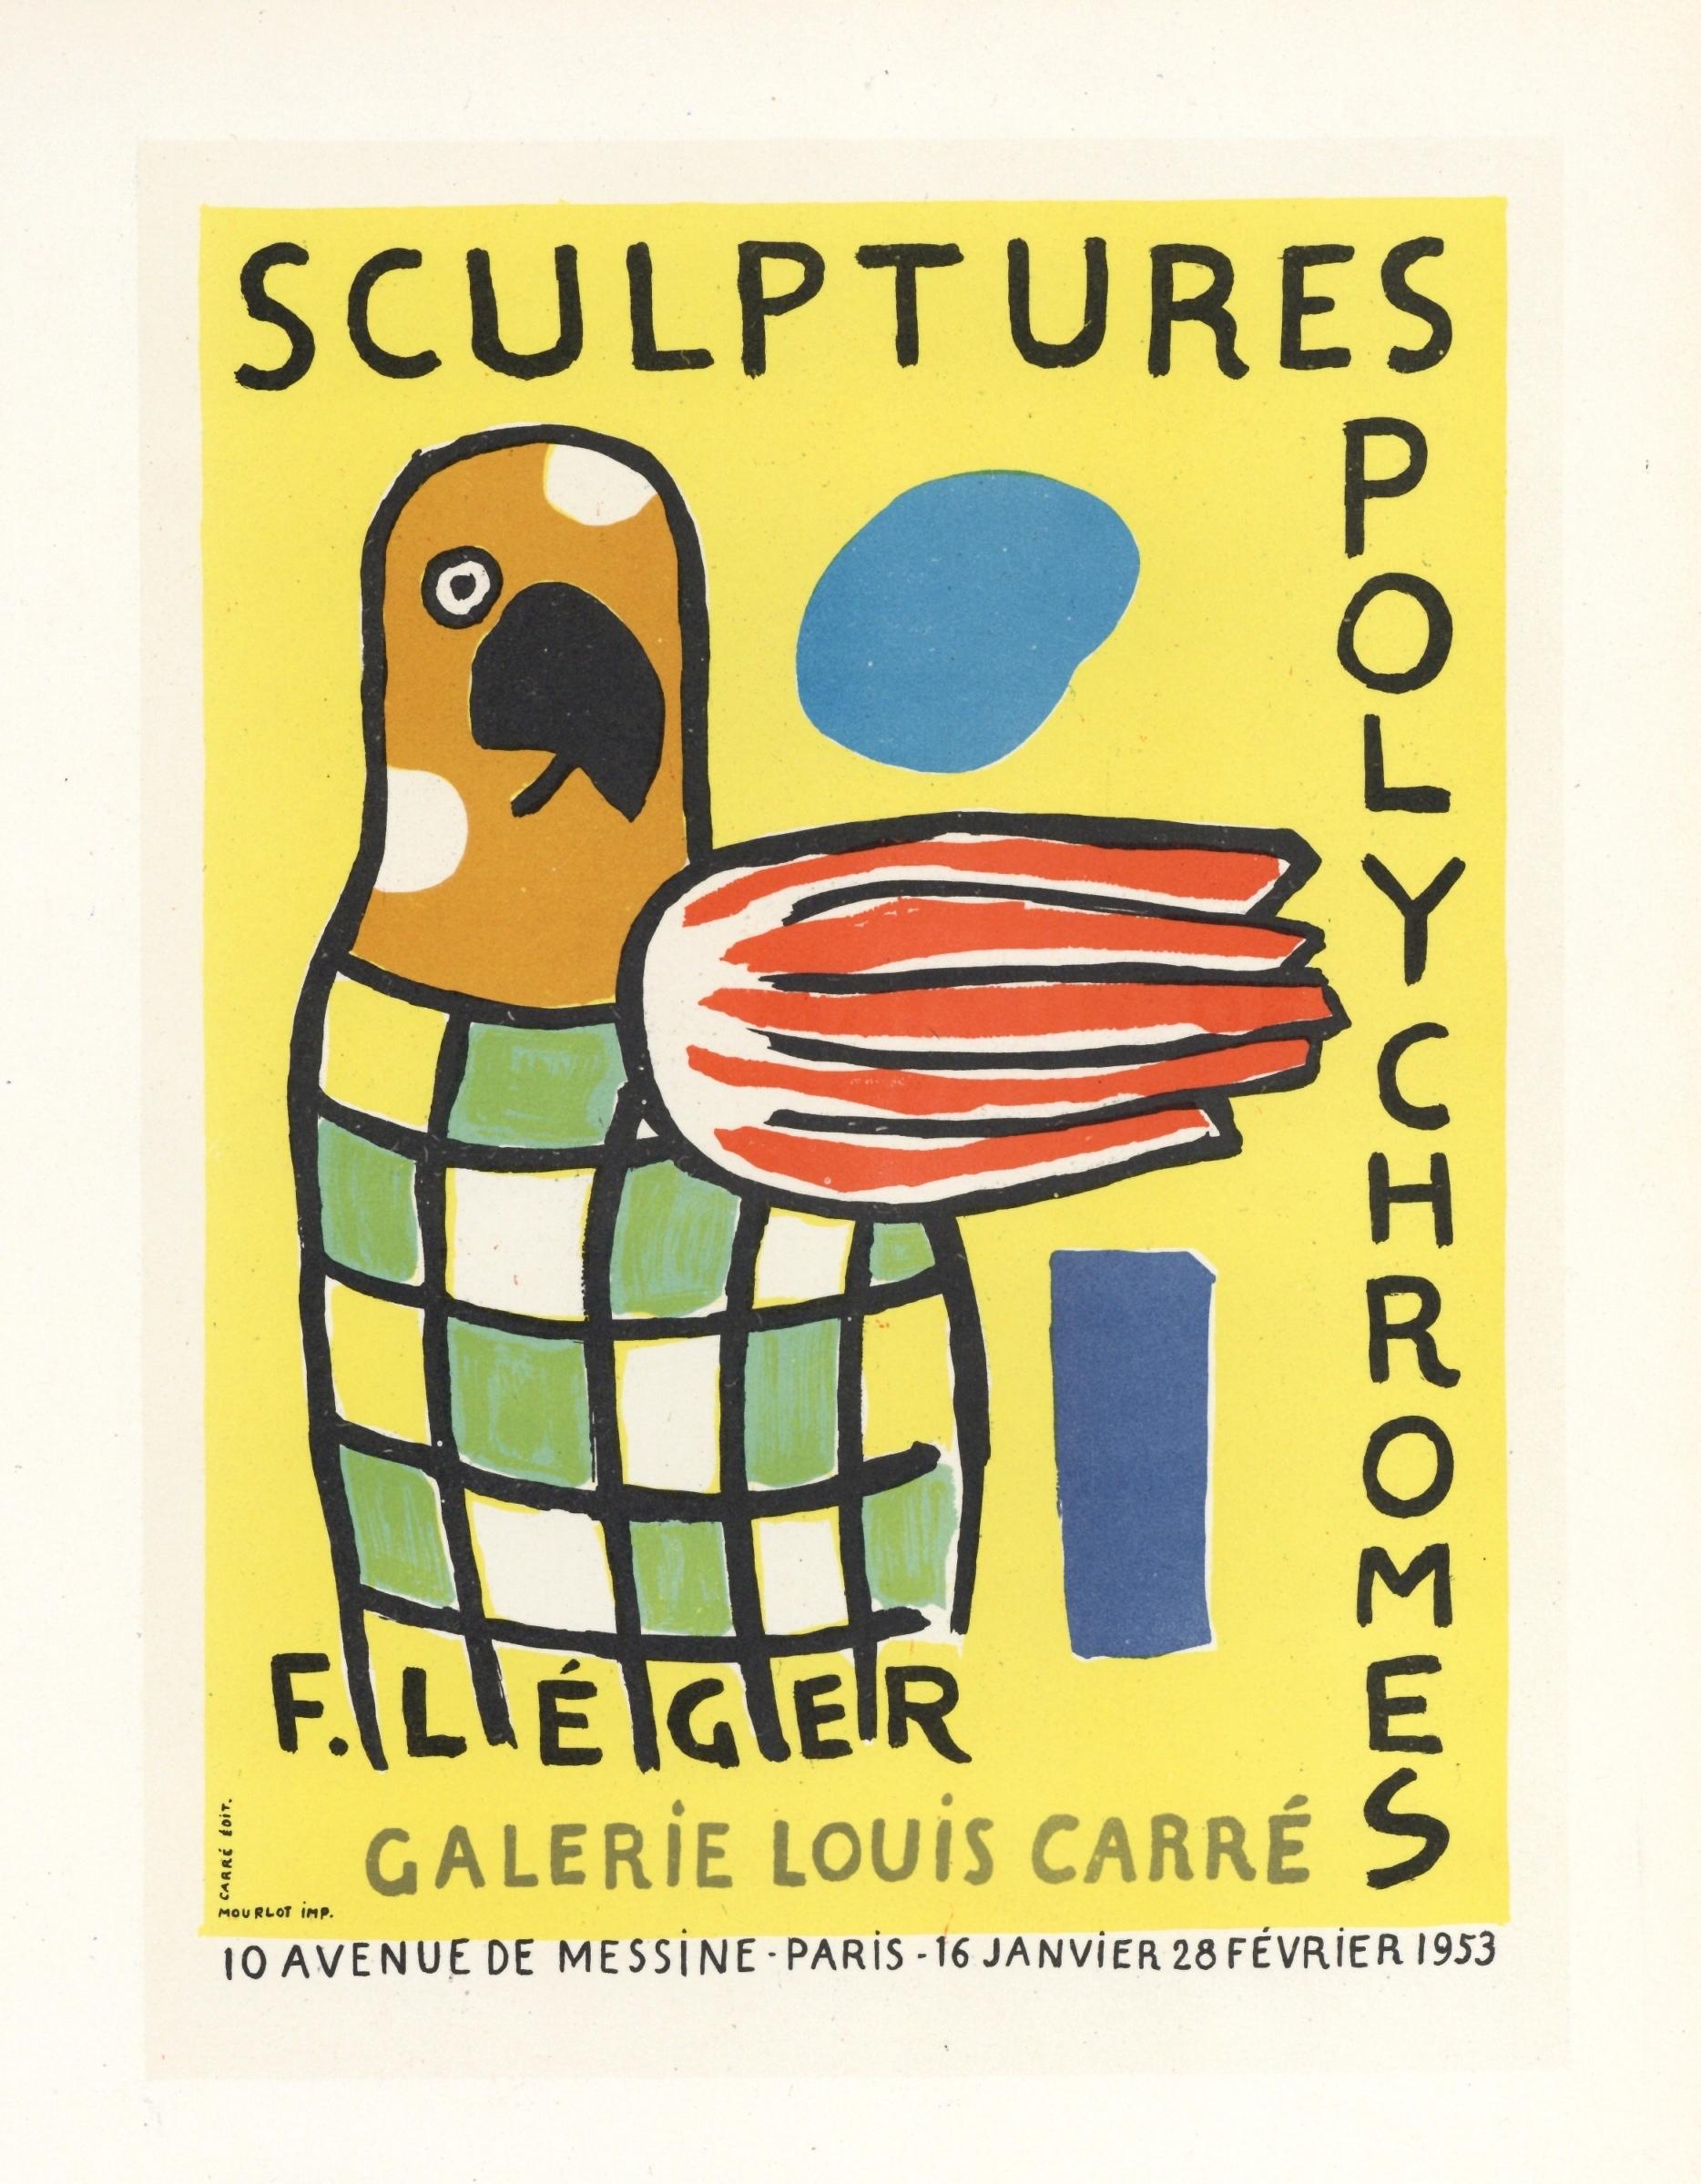 Affiche de lithographie « Sculptures Polychromes » - Print de (after) Fernand Léger